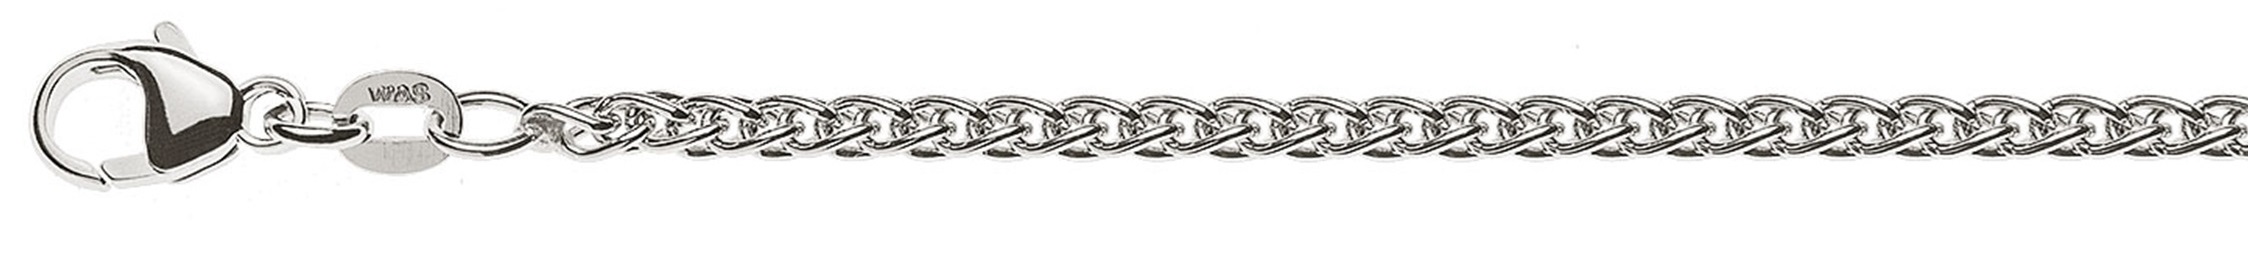 AURONOS Prestige Necklace white gold 18K cable chain 40cm 2.5mm